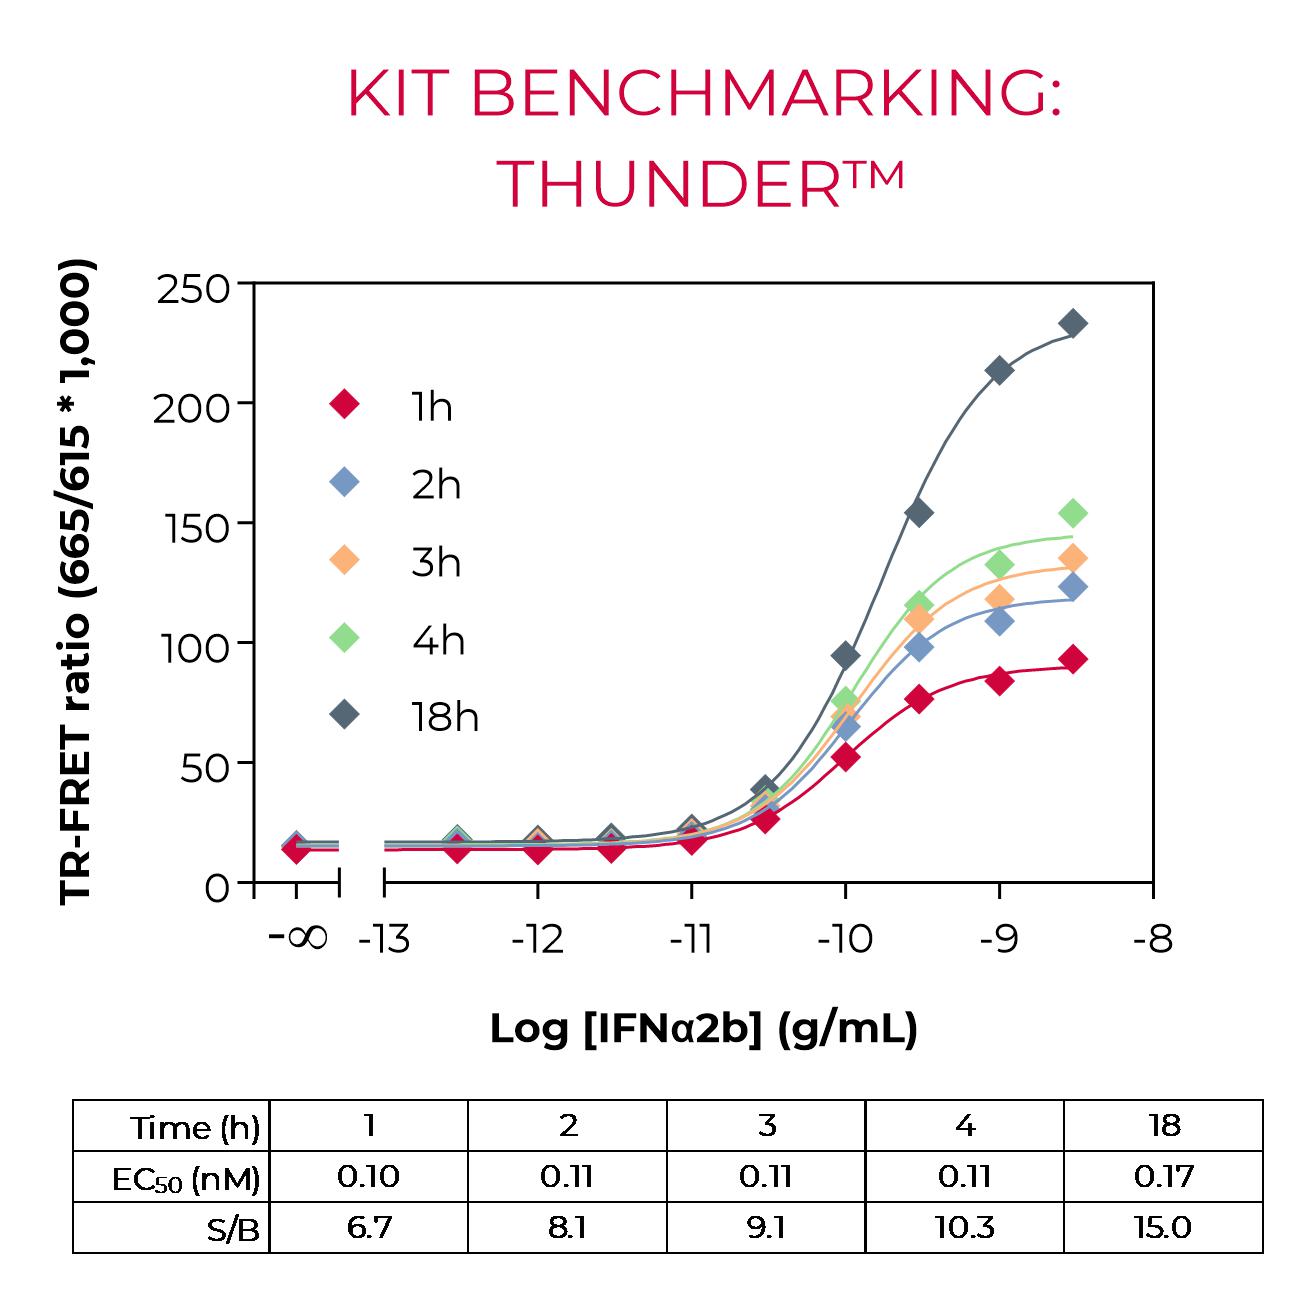 Phospho-STAT3 benchmarking-THUNDER